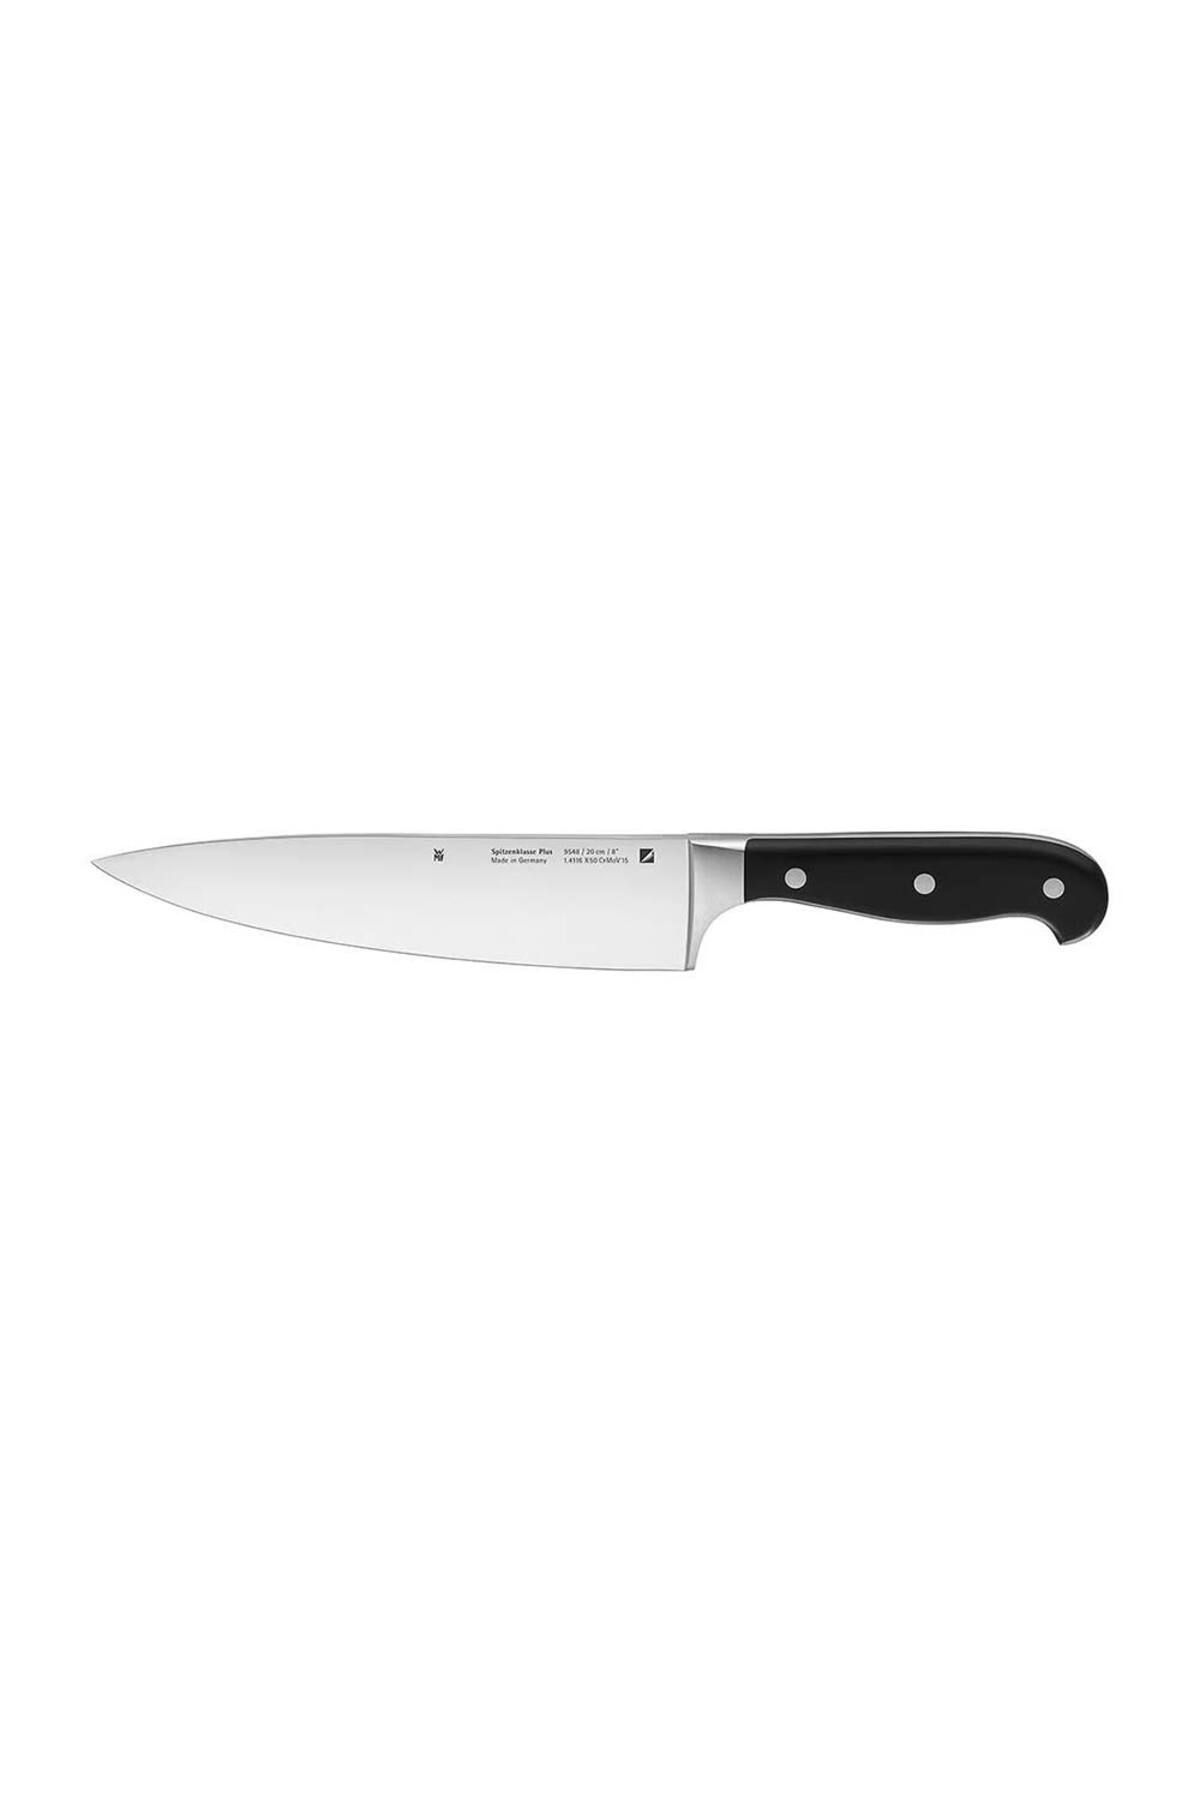 Wmf Spitzenklasse Şef Bıçağı 20 Cm